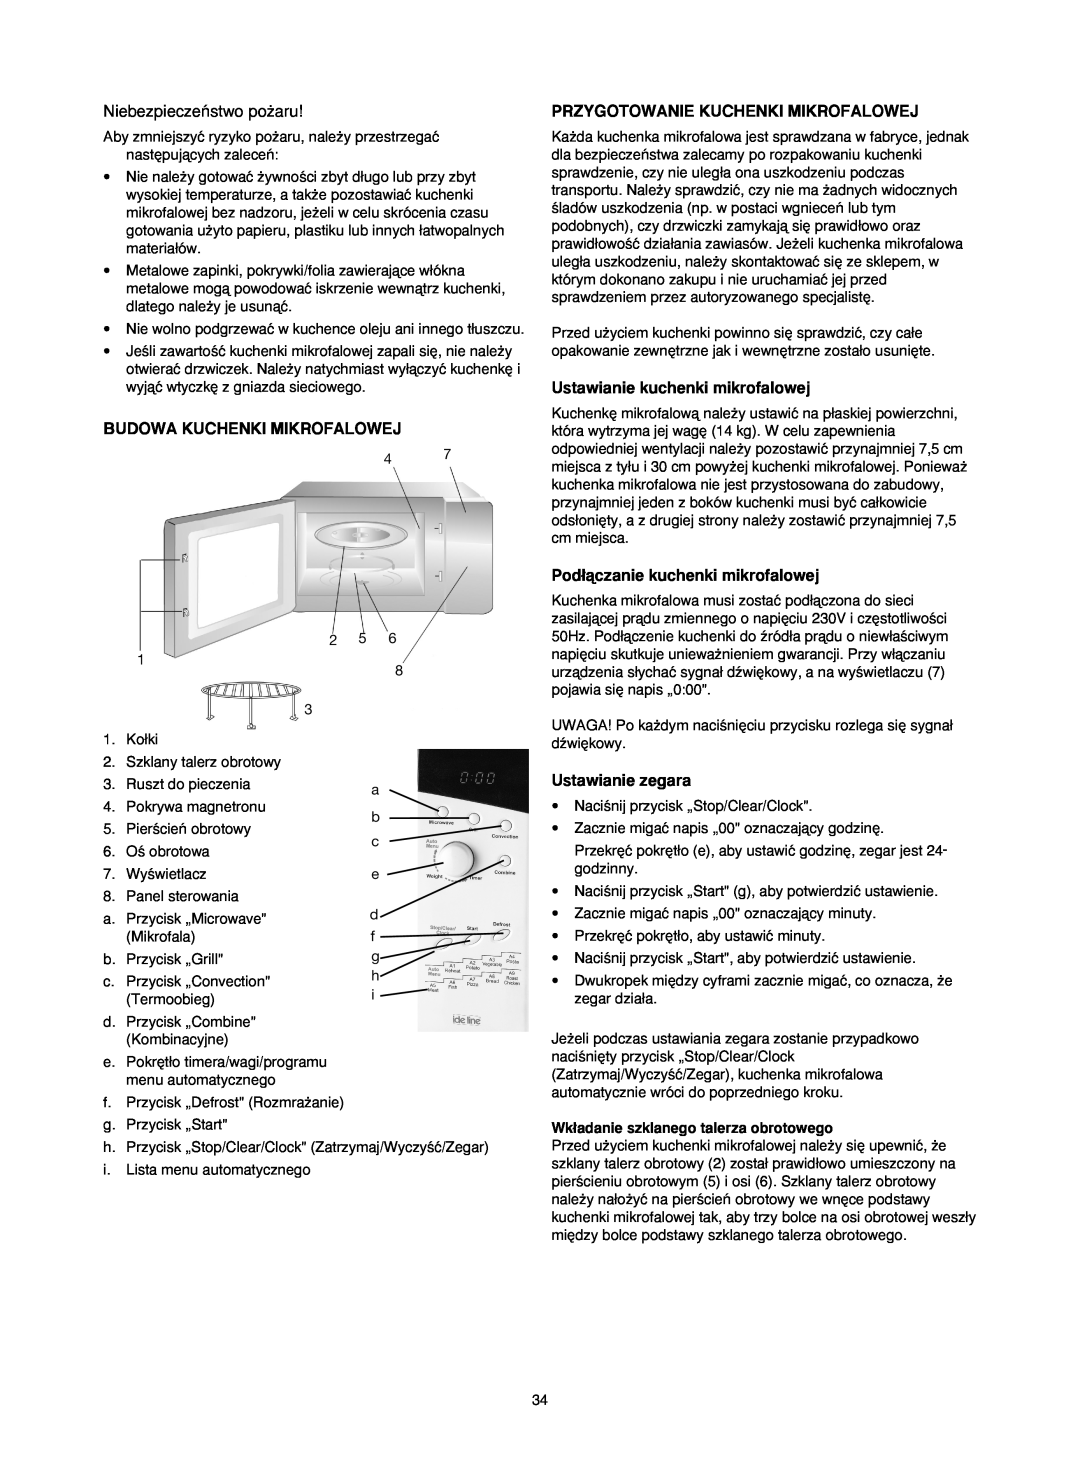 Melissa 753-130 manual Niebezpieczeƒstwo po˝aru, Budowa Kuchenki Mikrofalowej, Przygotowanie Kuchenki Mikrofalowej 